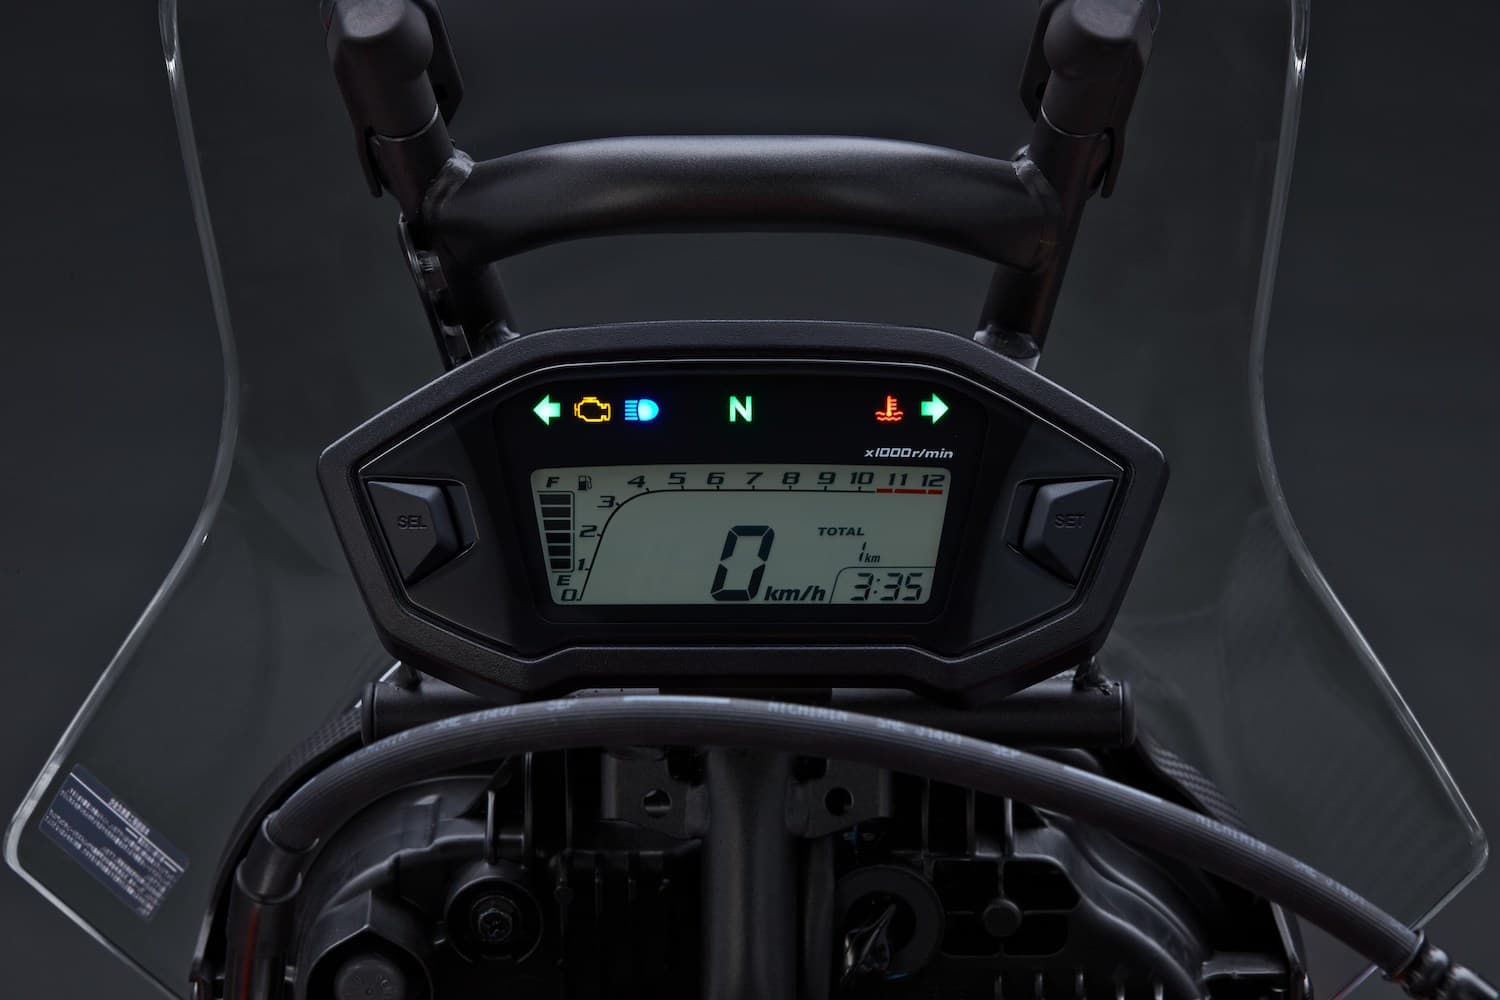 Honda CRF250L Digital dash display